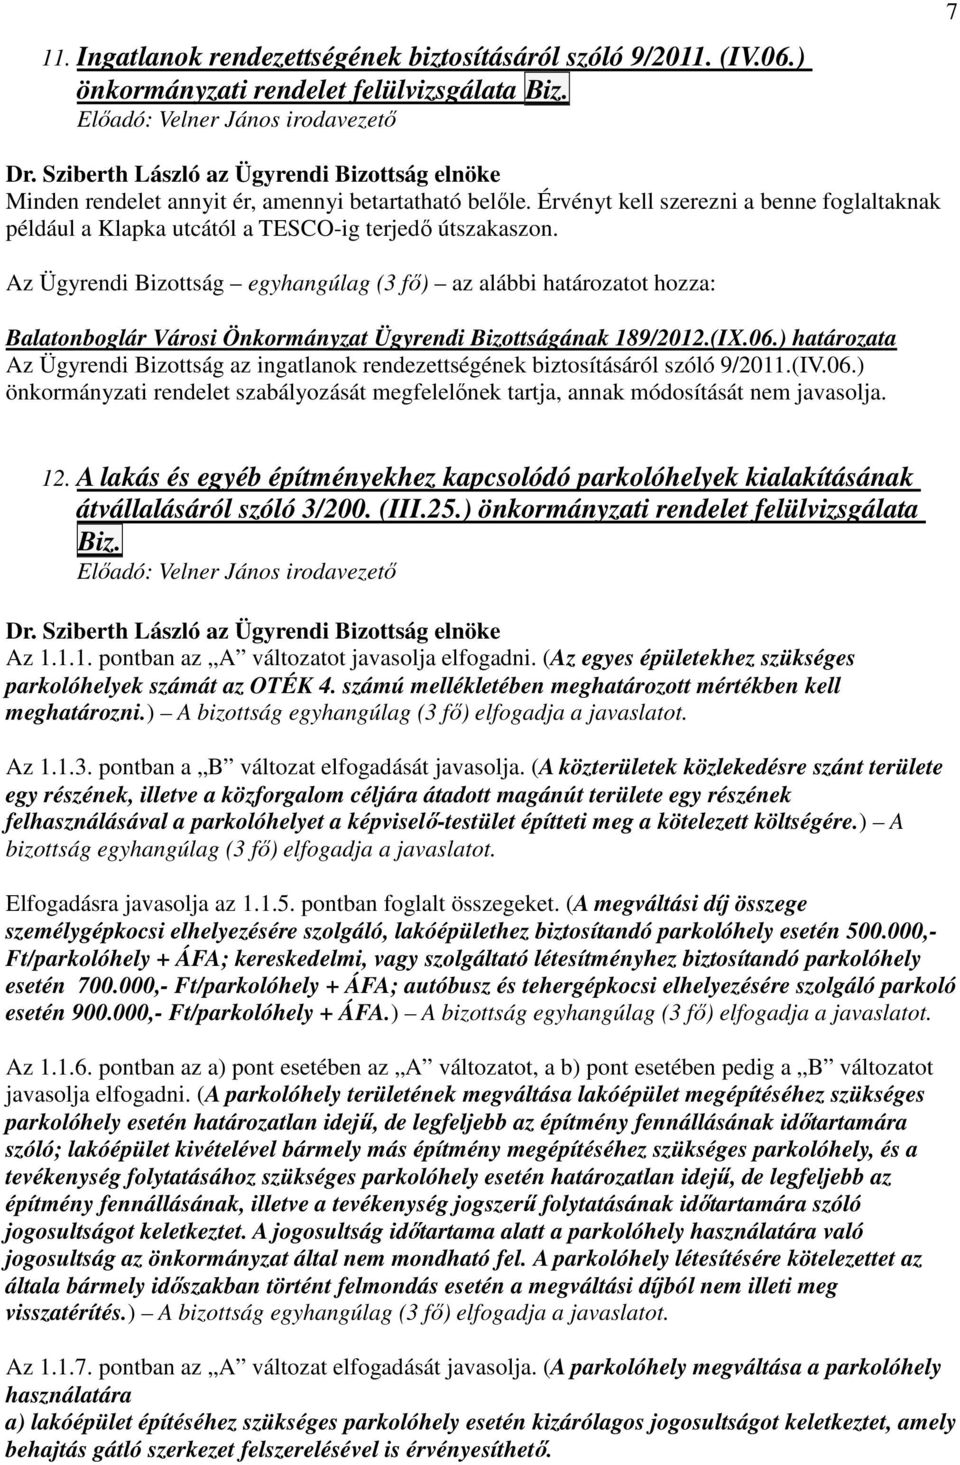 Balatonboglár Városi Önkormányzat Ügyrendi Bizottságának 189/2012.(IX.06.) határozata Az Ügyrendi Bizottság az ingatlanok rendezettségének biztosításáról szóló 9/2011.(IV.06.) önkormányzati rendelet szabályozását megfelelınek tartja, annak módosítását nem javasolja.